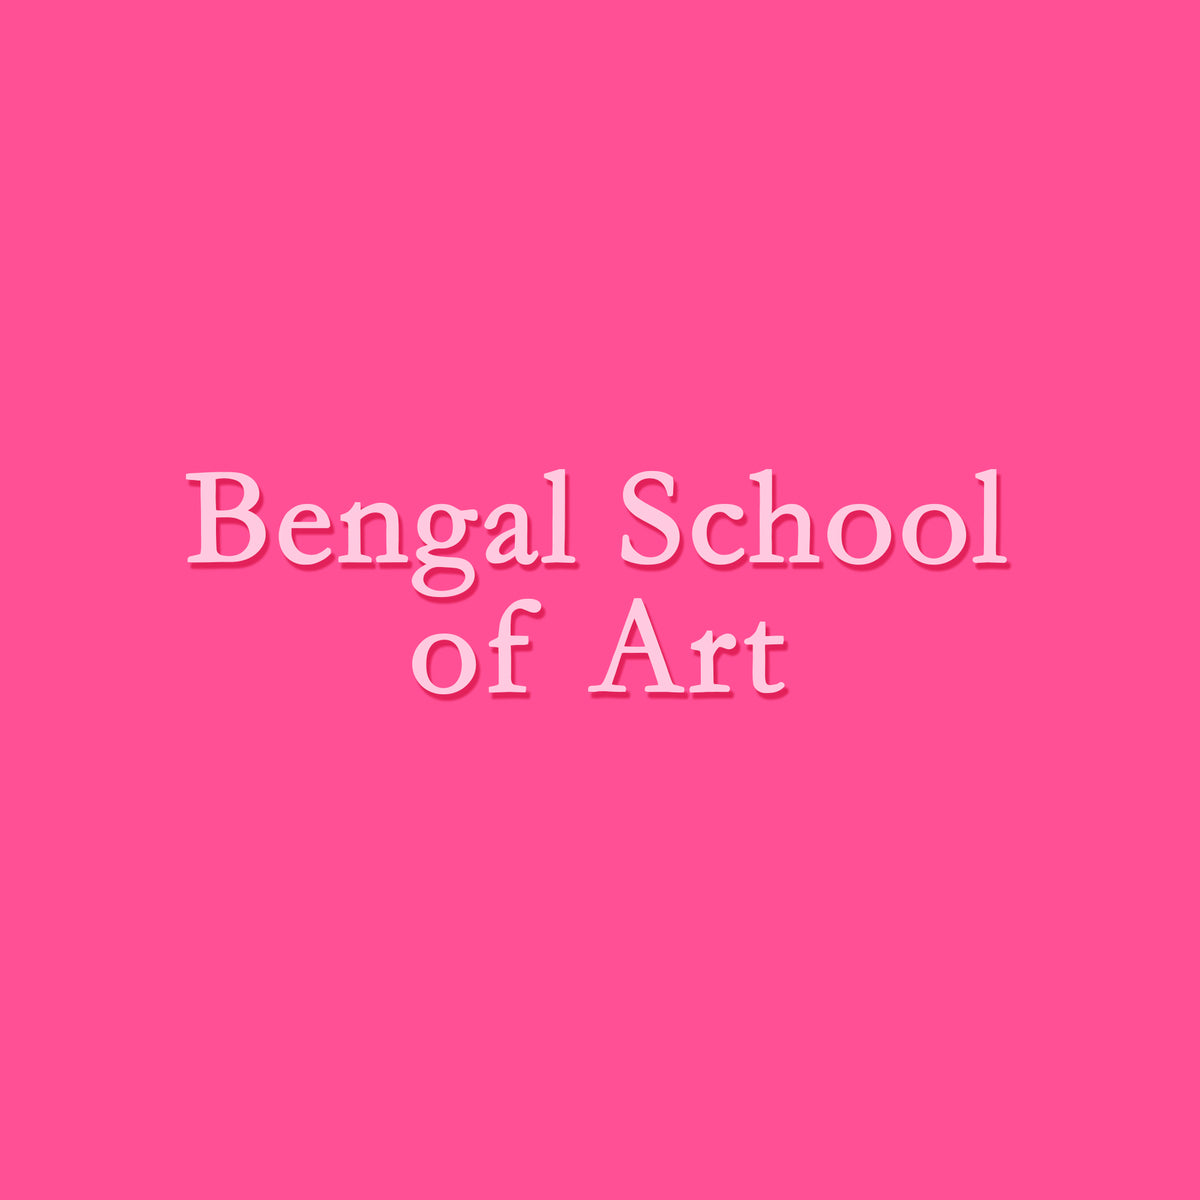 Bengal School of Art